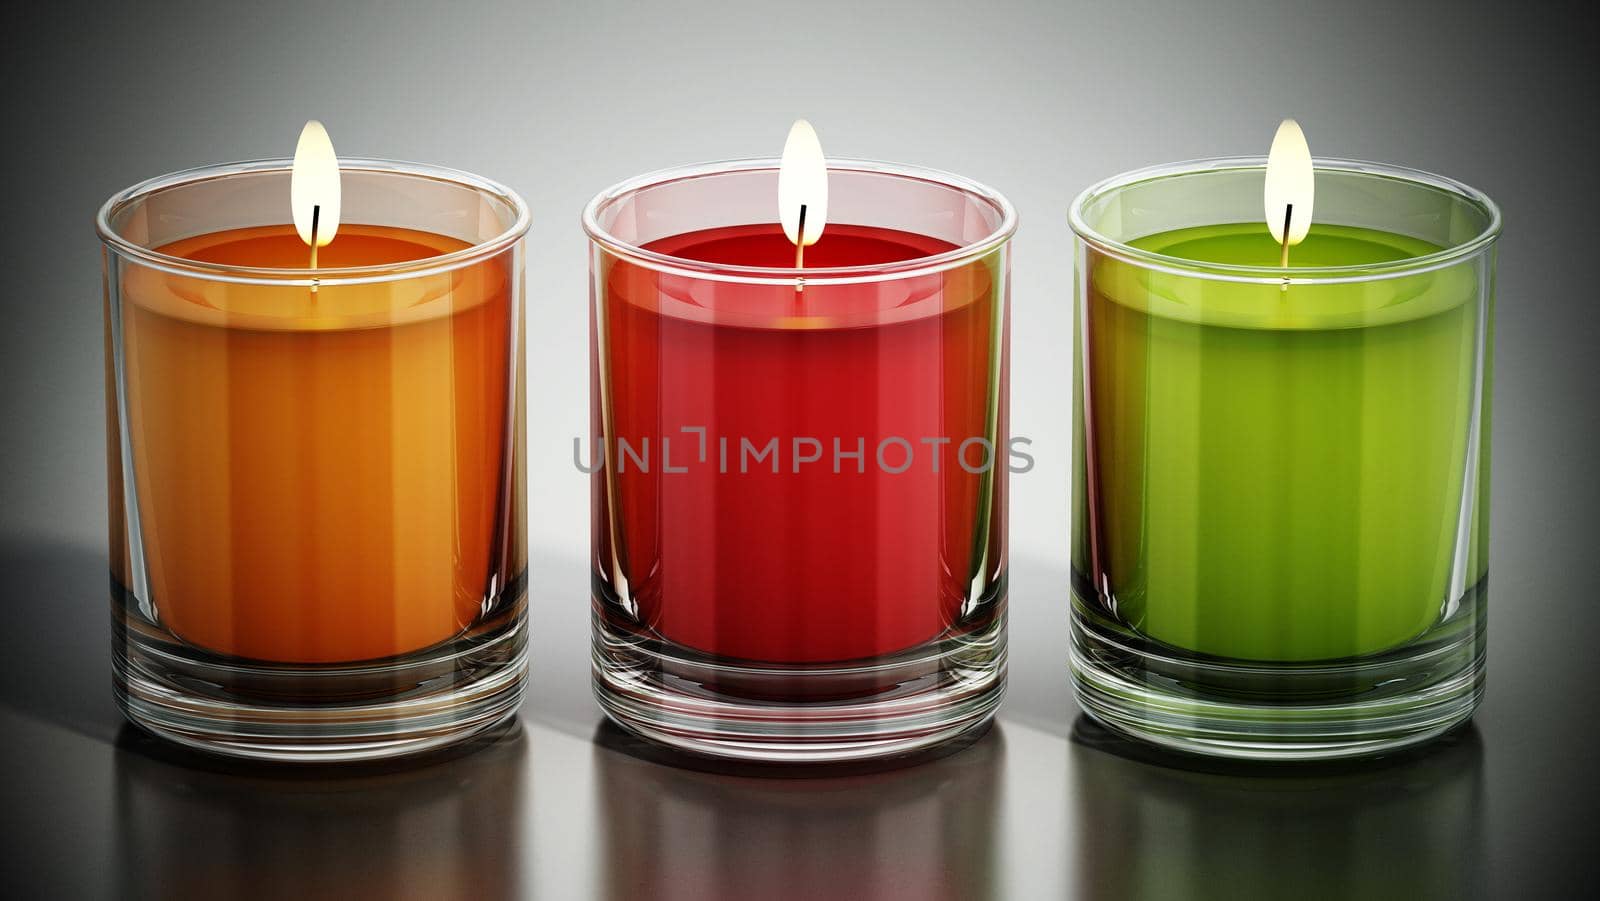 Colorful lit candles inside glasses. 3D illustration.